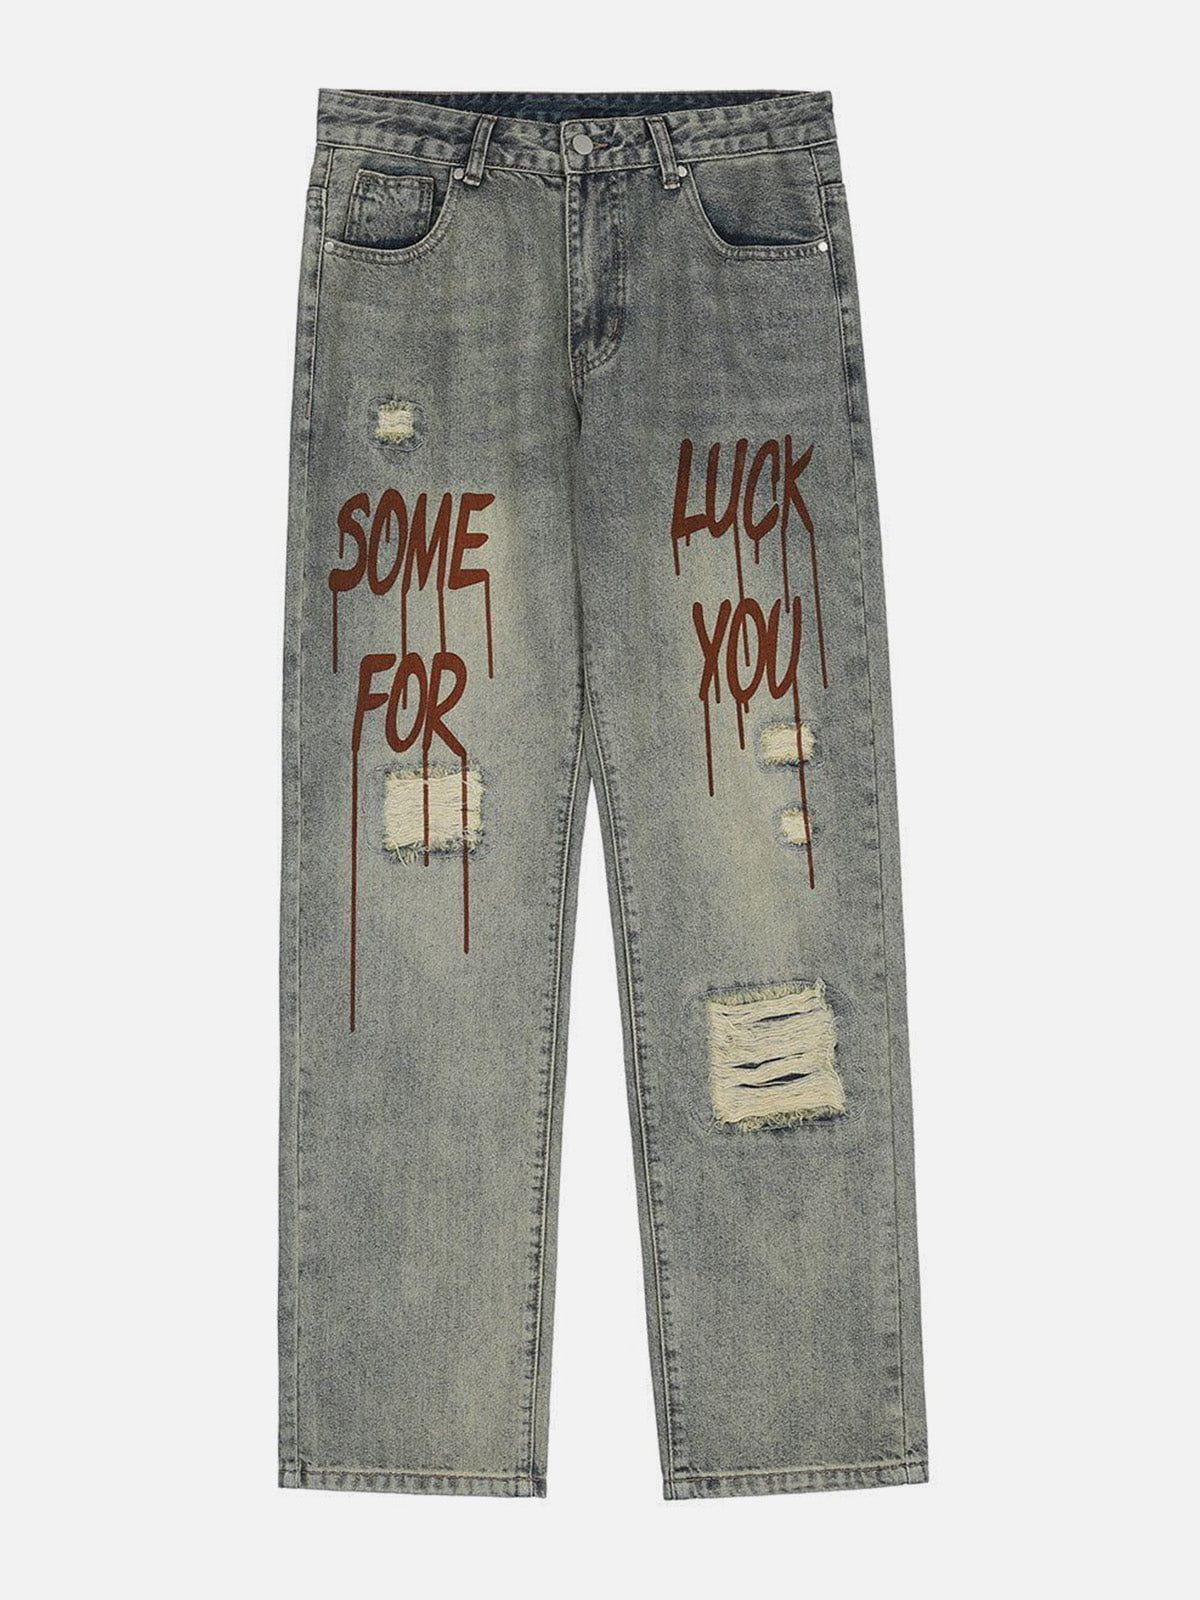 Eprezzy® - Broken Letters Jeans Streetwear Fashion - eprezzy.com